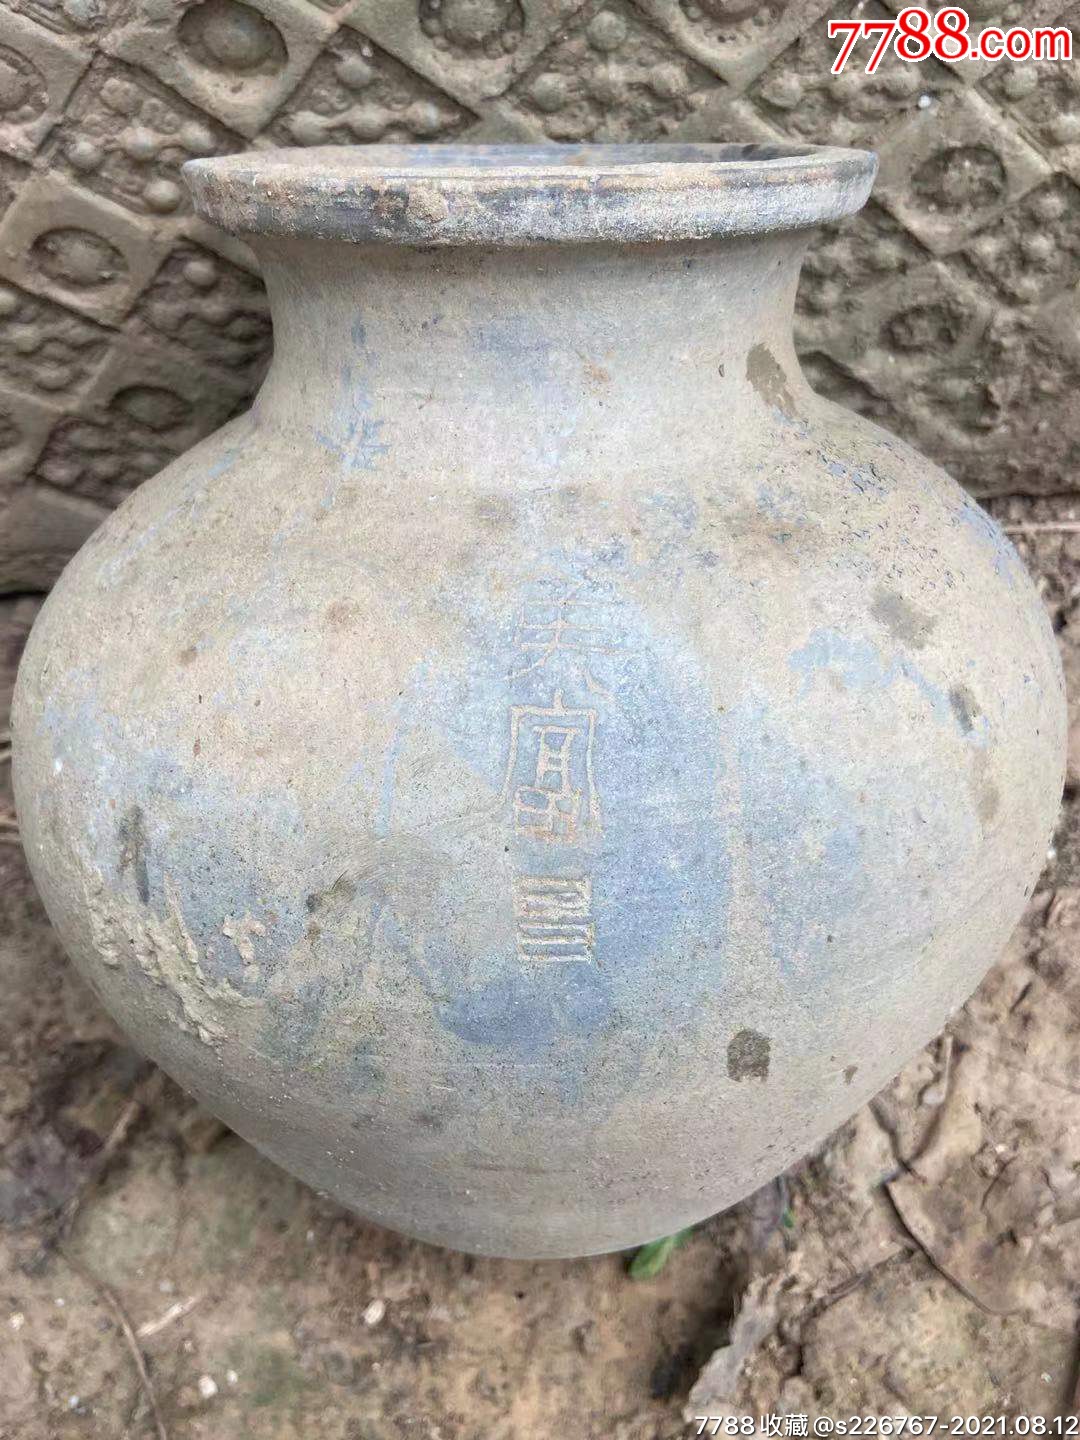 古玩陶器高古陶瓷汉代带字陶罐-价格:550.0000元-se